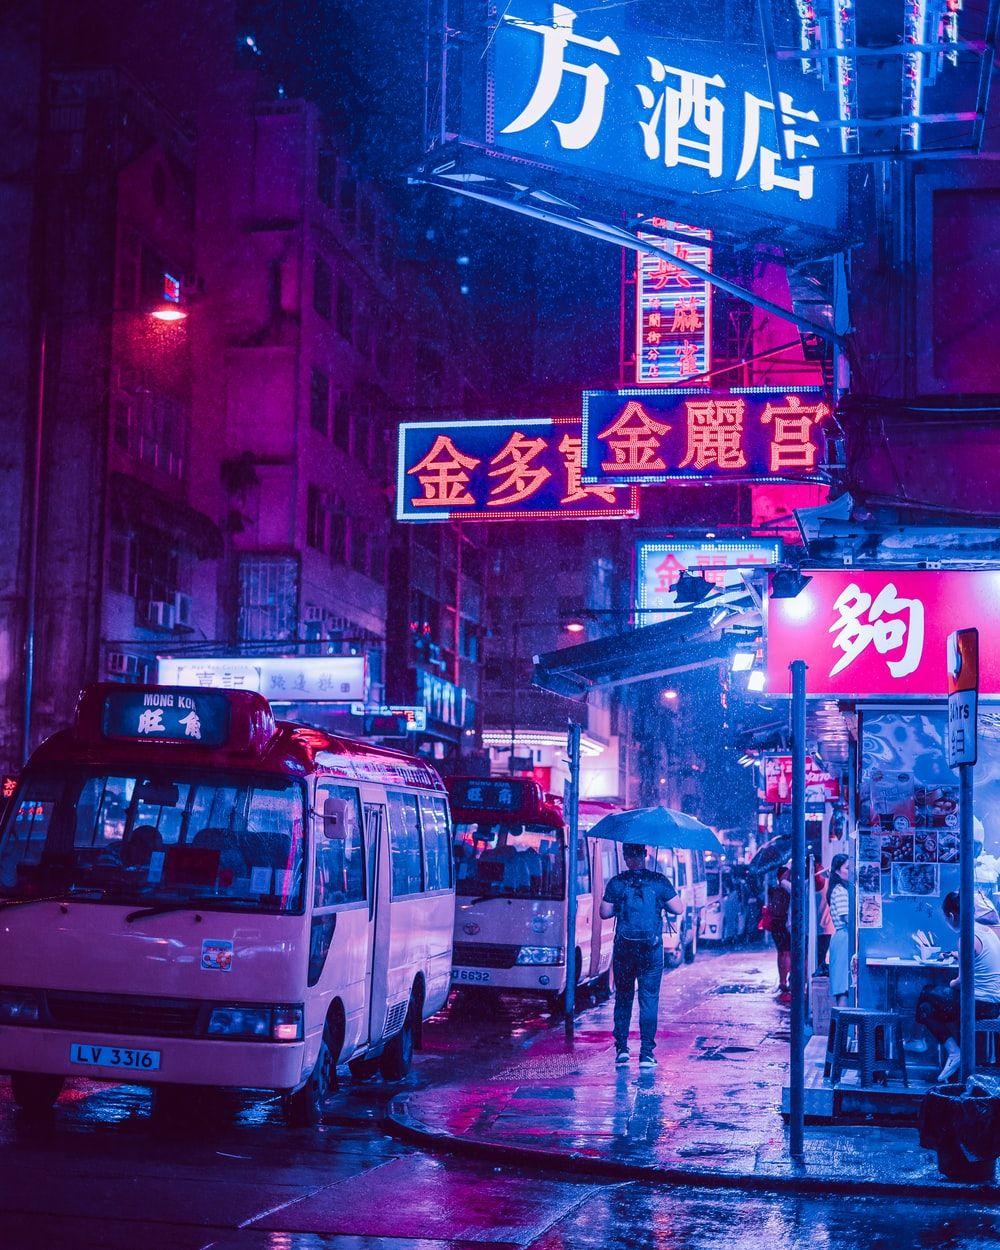 Hong Kong Neon Wallpapers - Top Free Hong Kong Neon Backgrounds ...